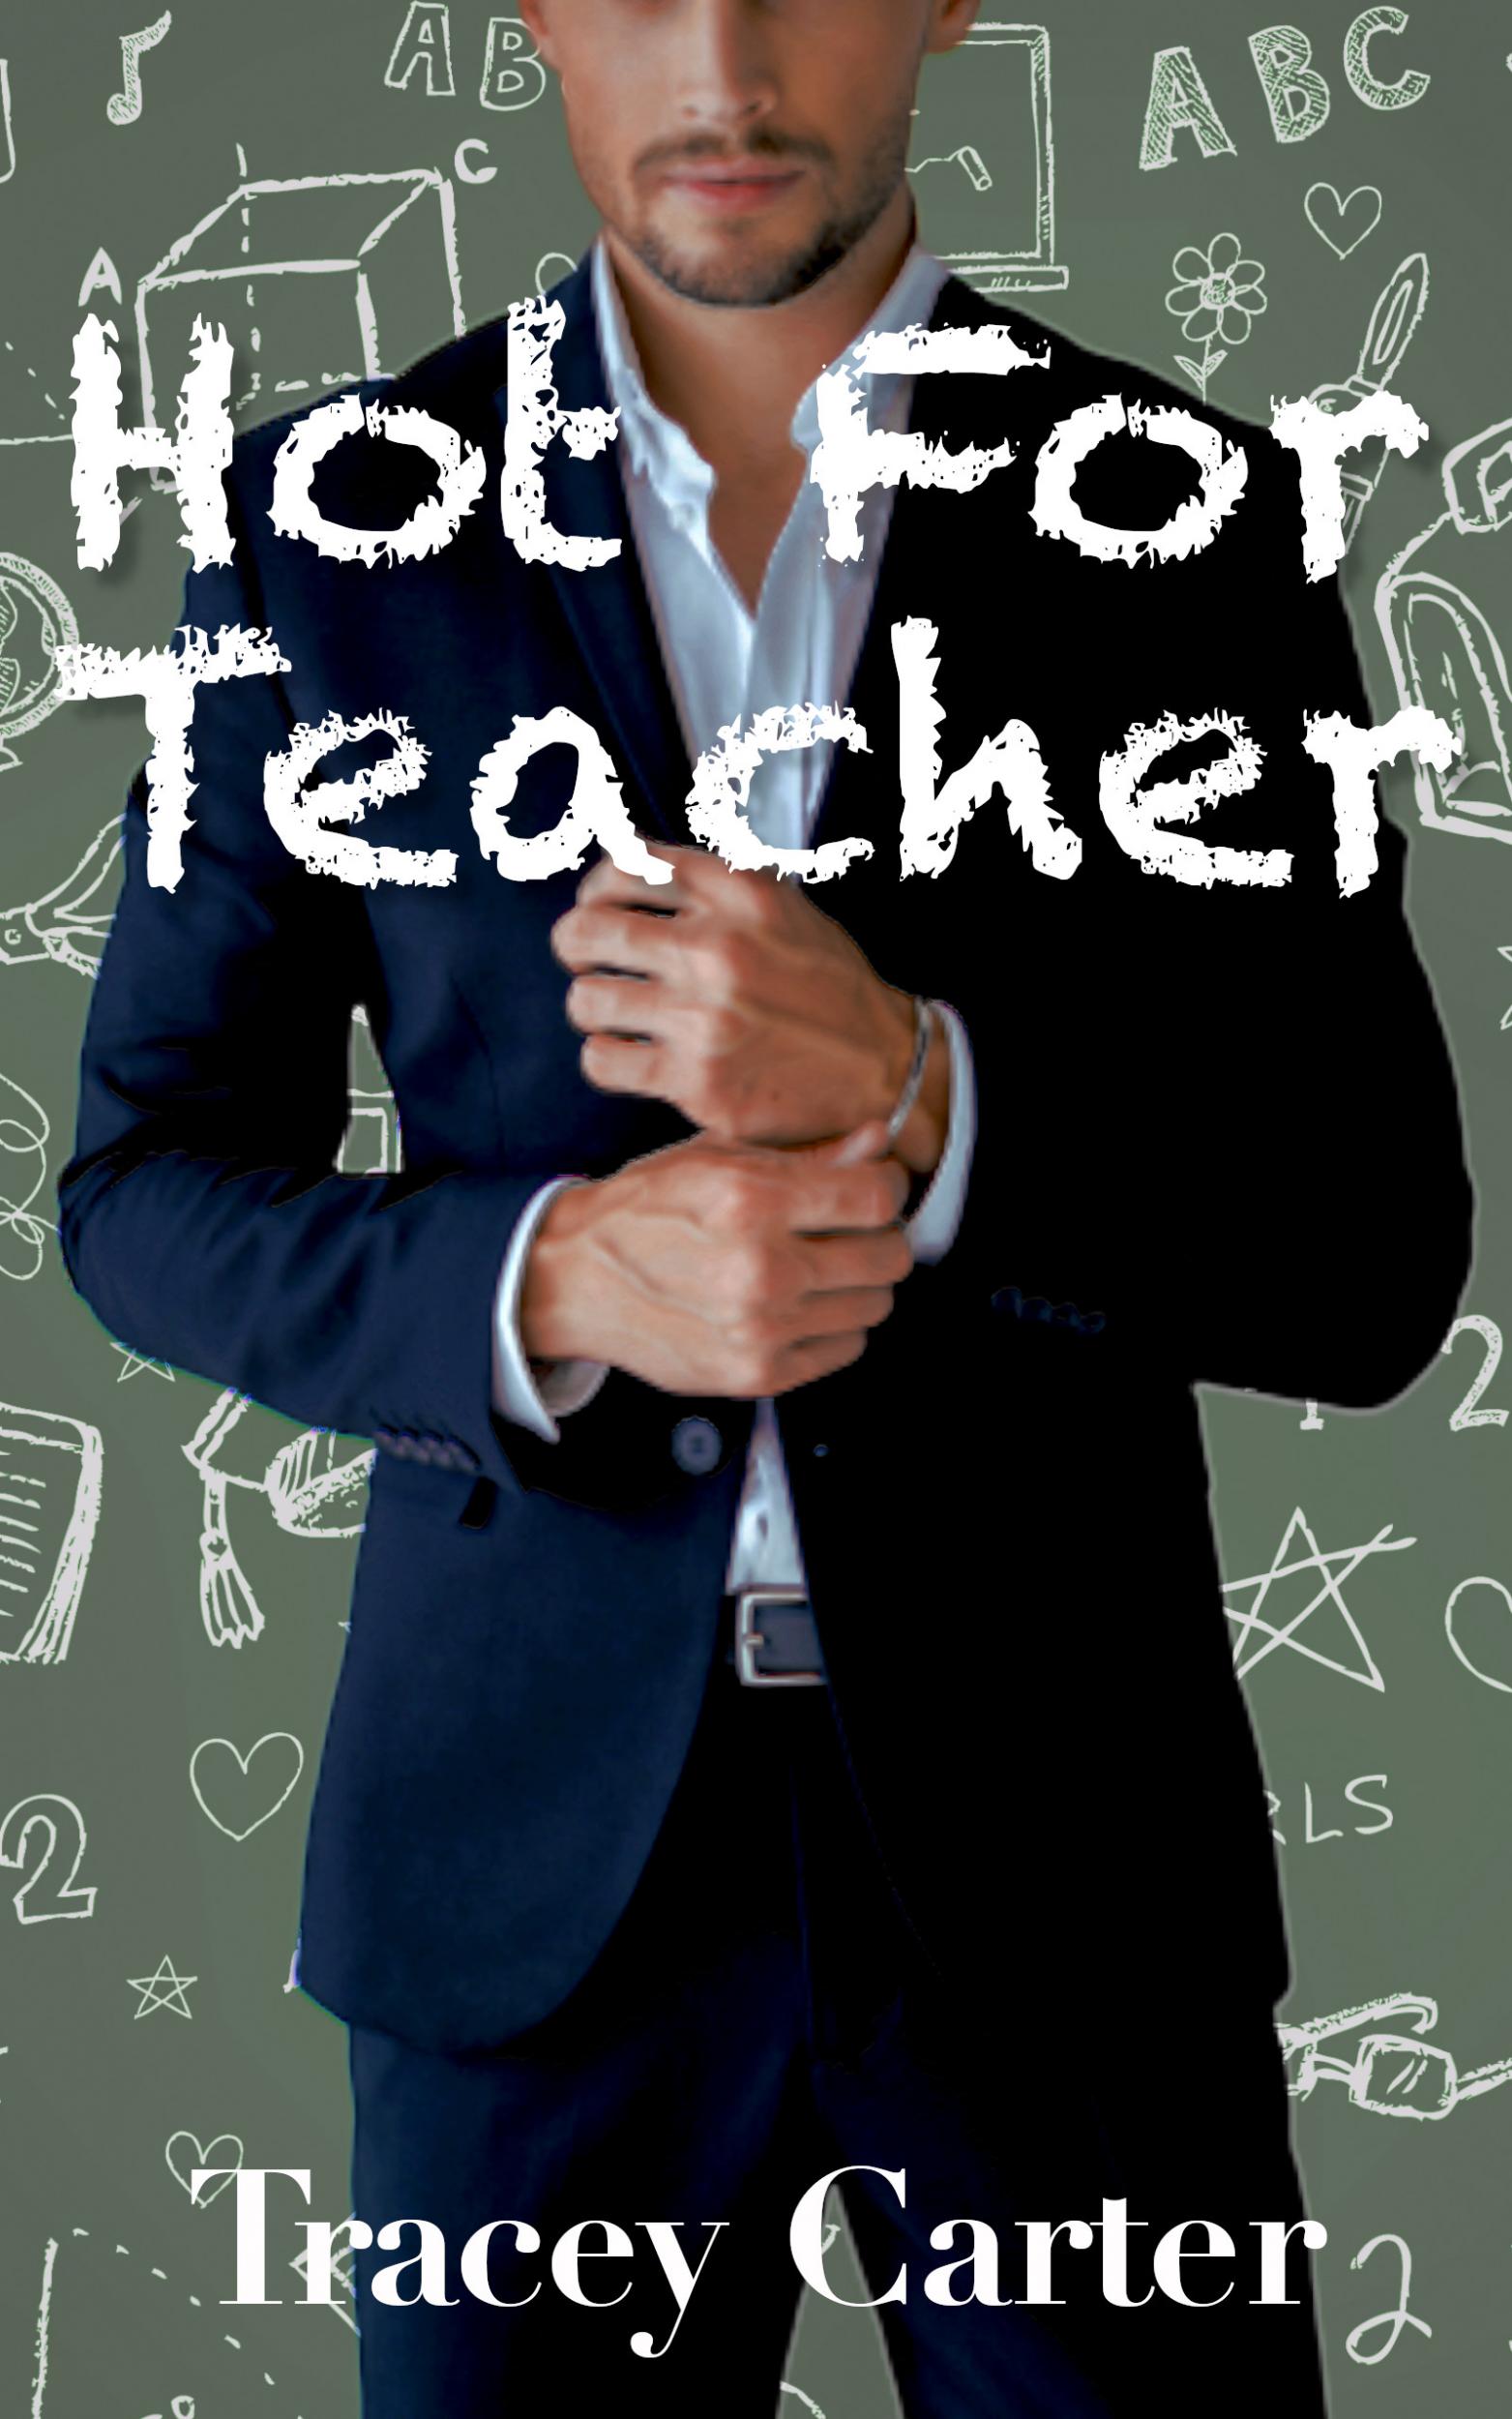 Free Hot Teacher